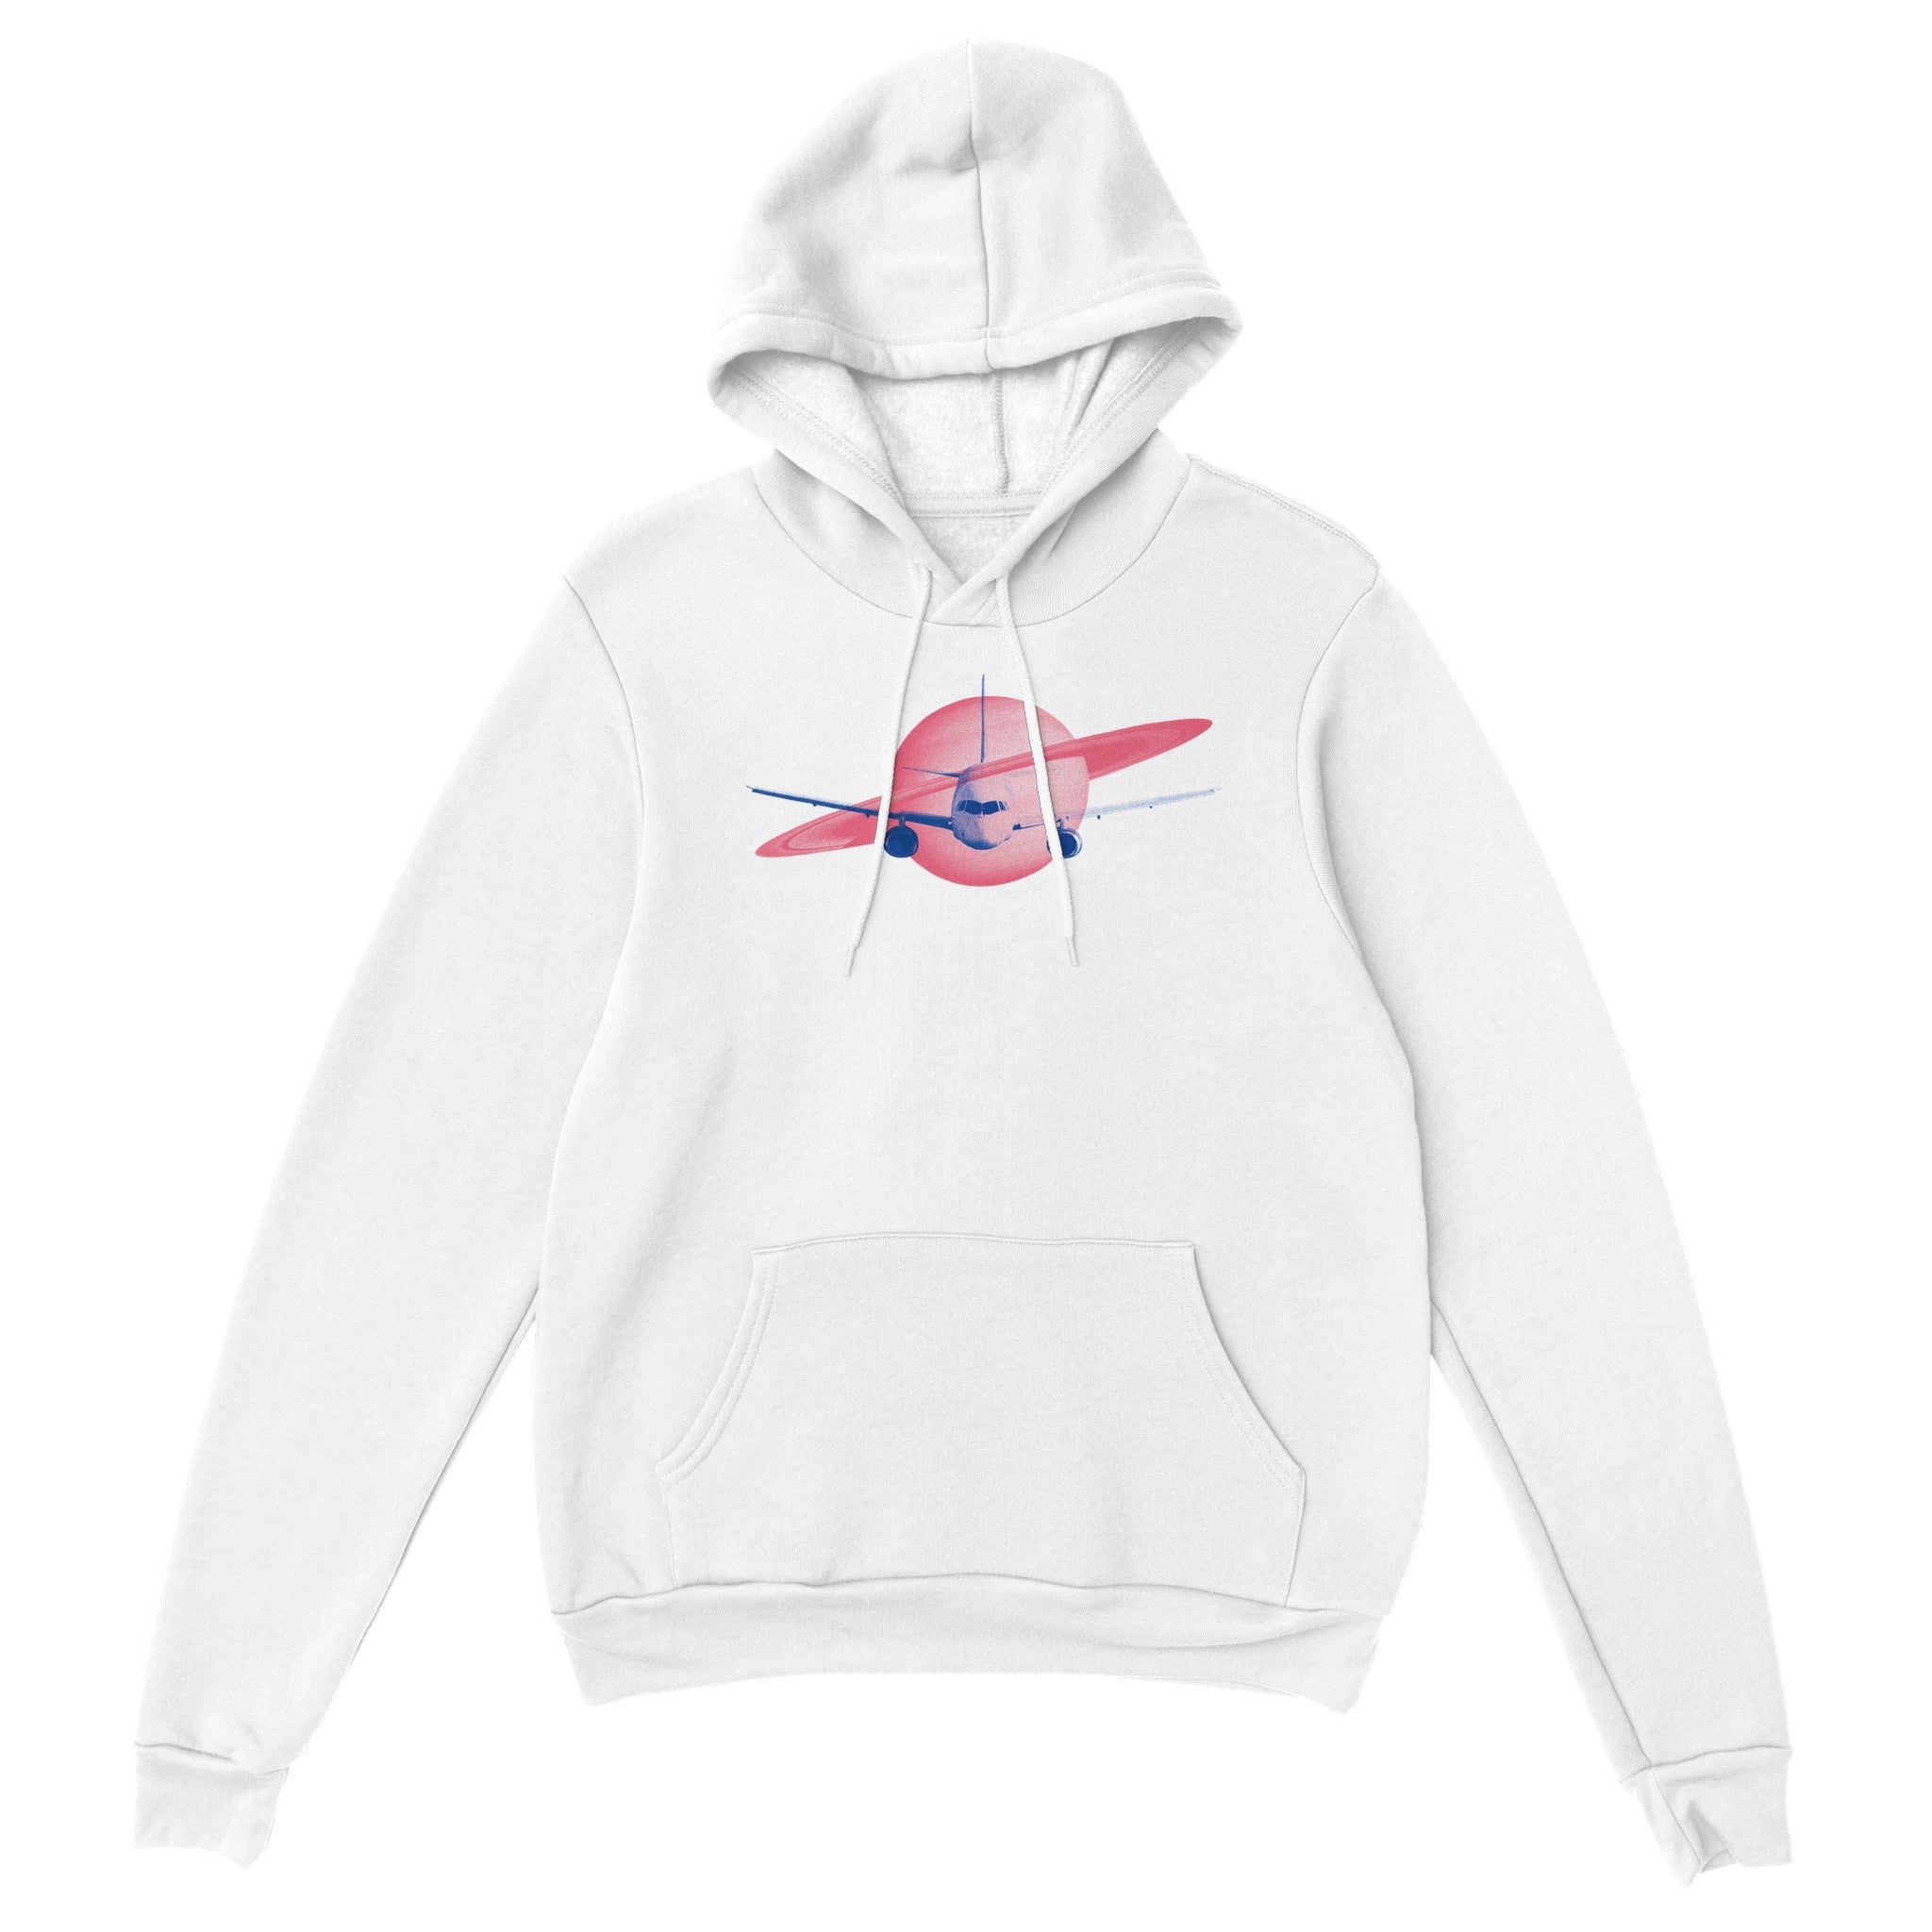 'Jet Setter' hoodie - In Print We Trust